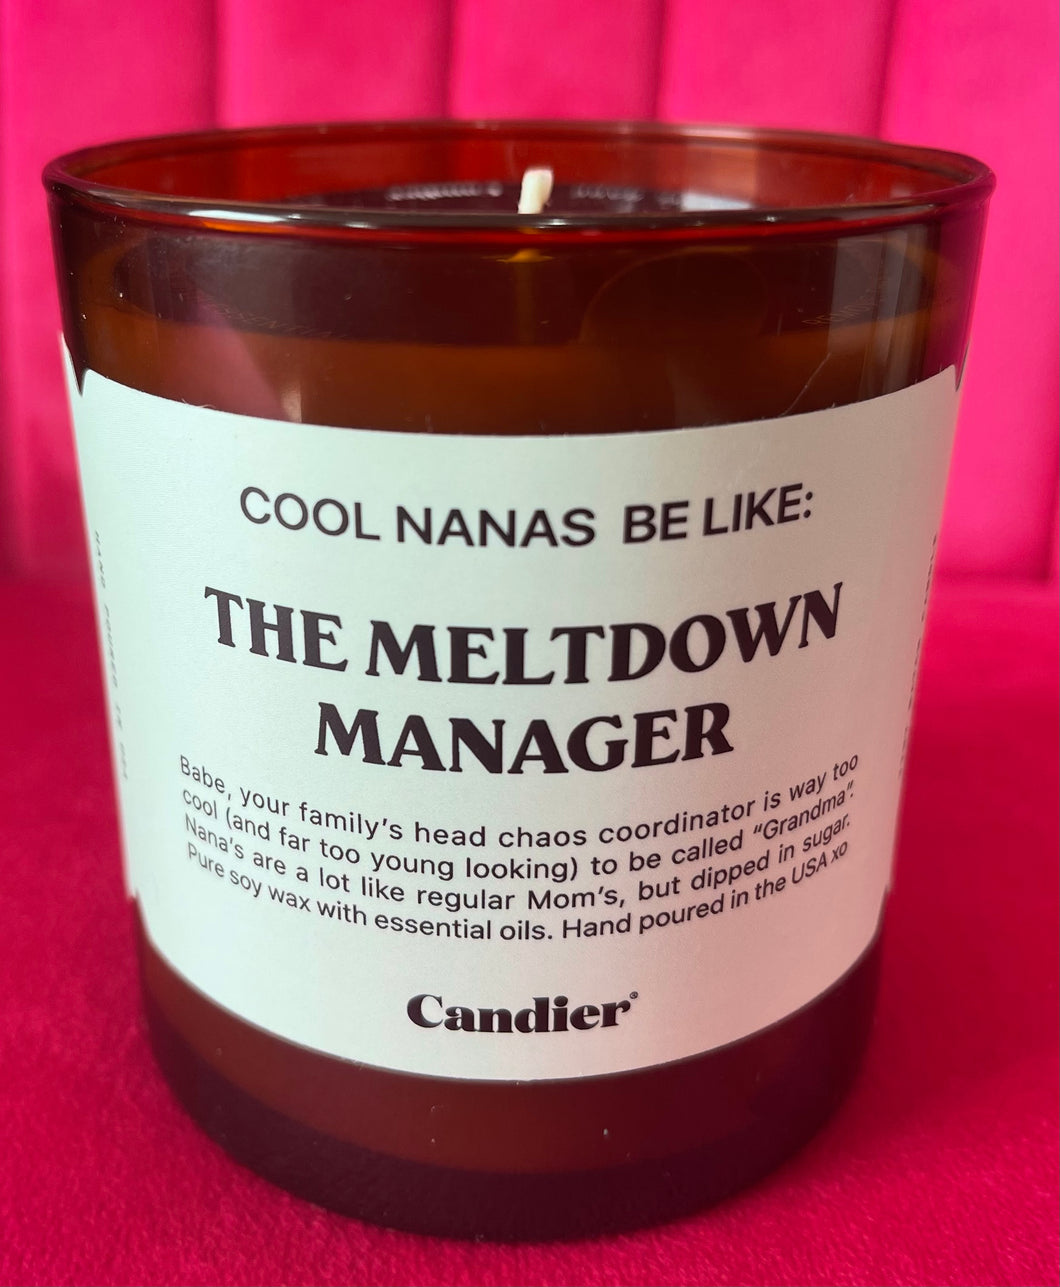 Nana Candle